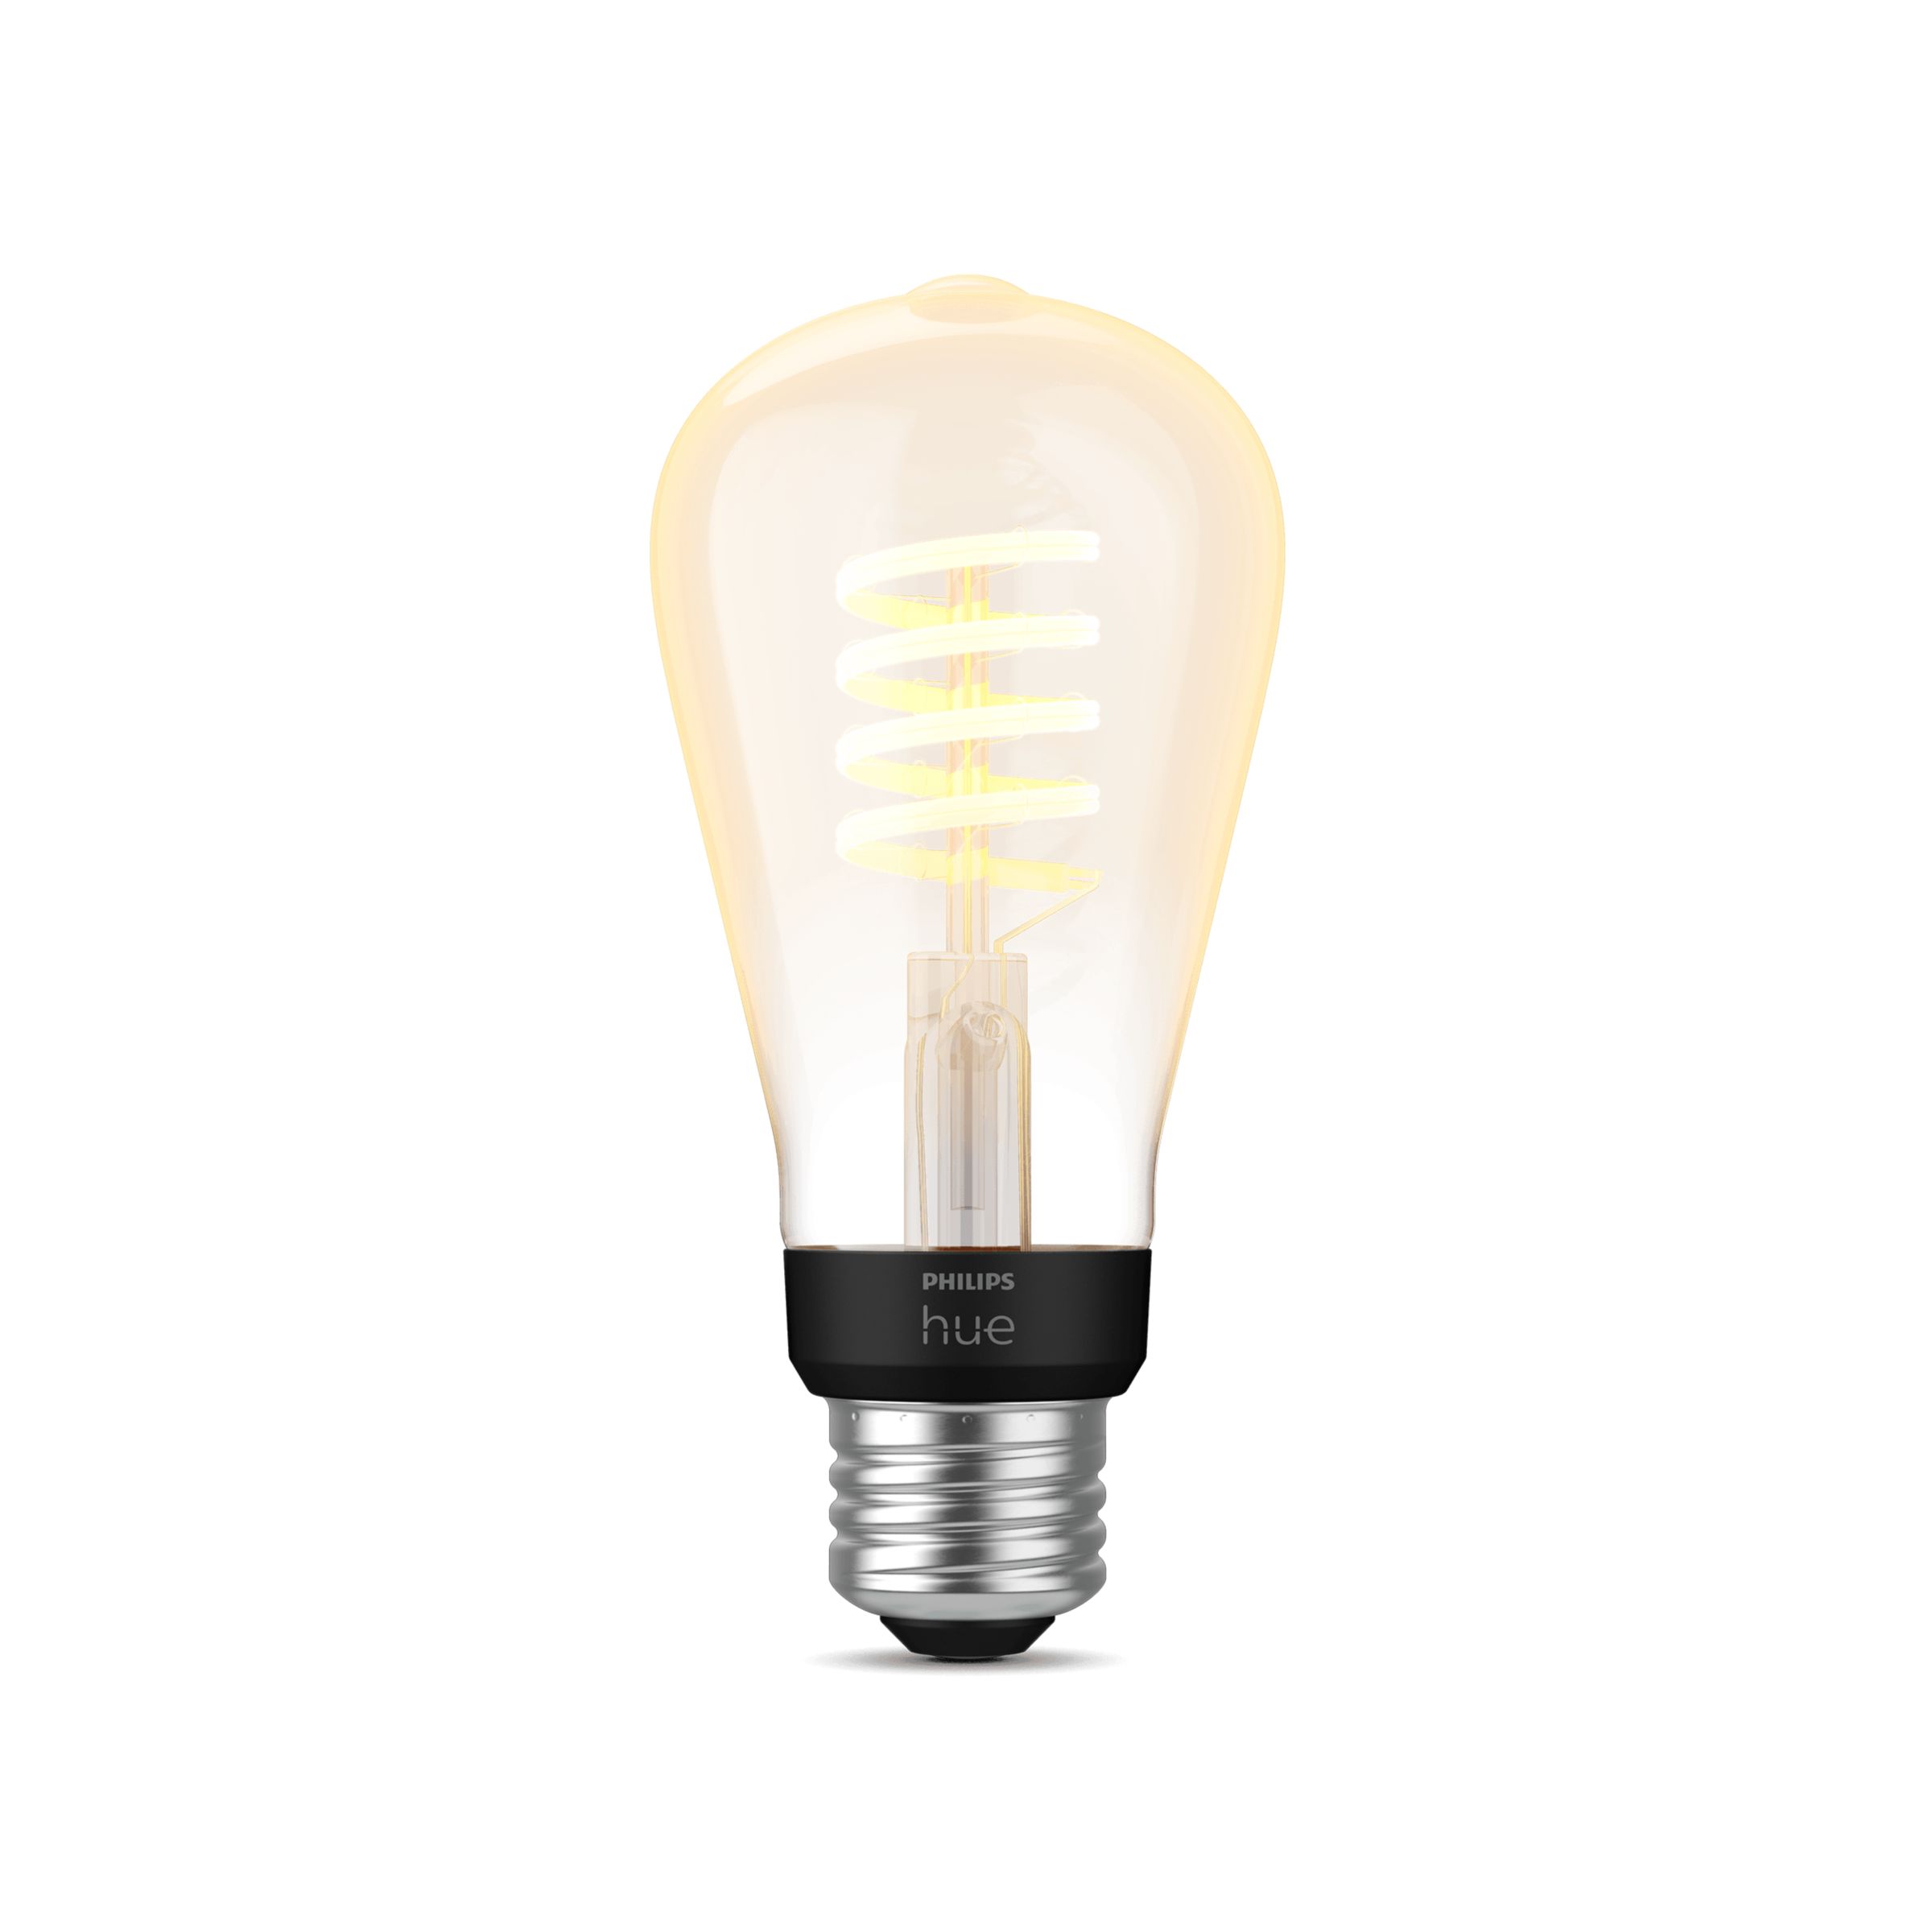 IFA 2019 : Philips lance de nouveaux modèles d'ampoule au design vintage  pour sa gamme Hue